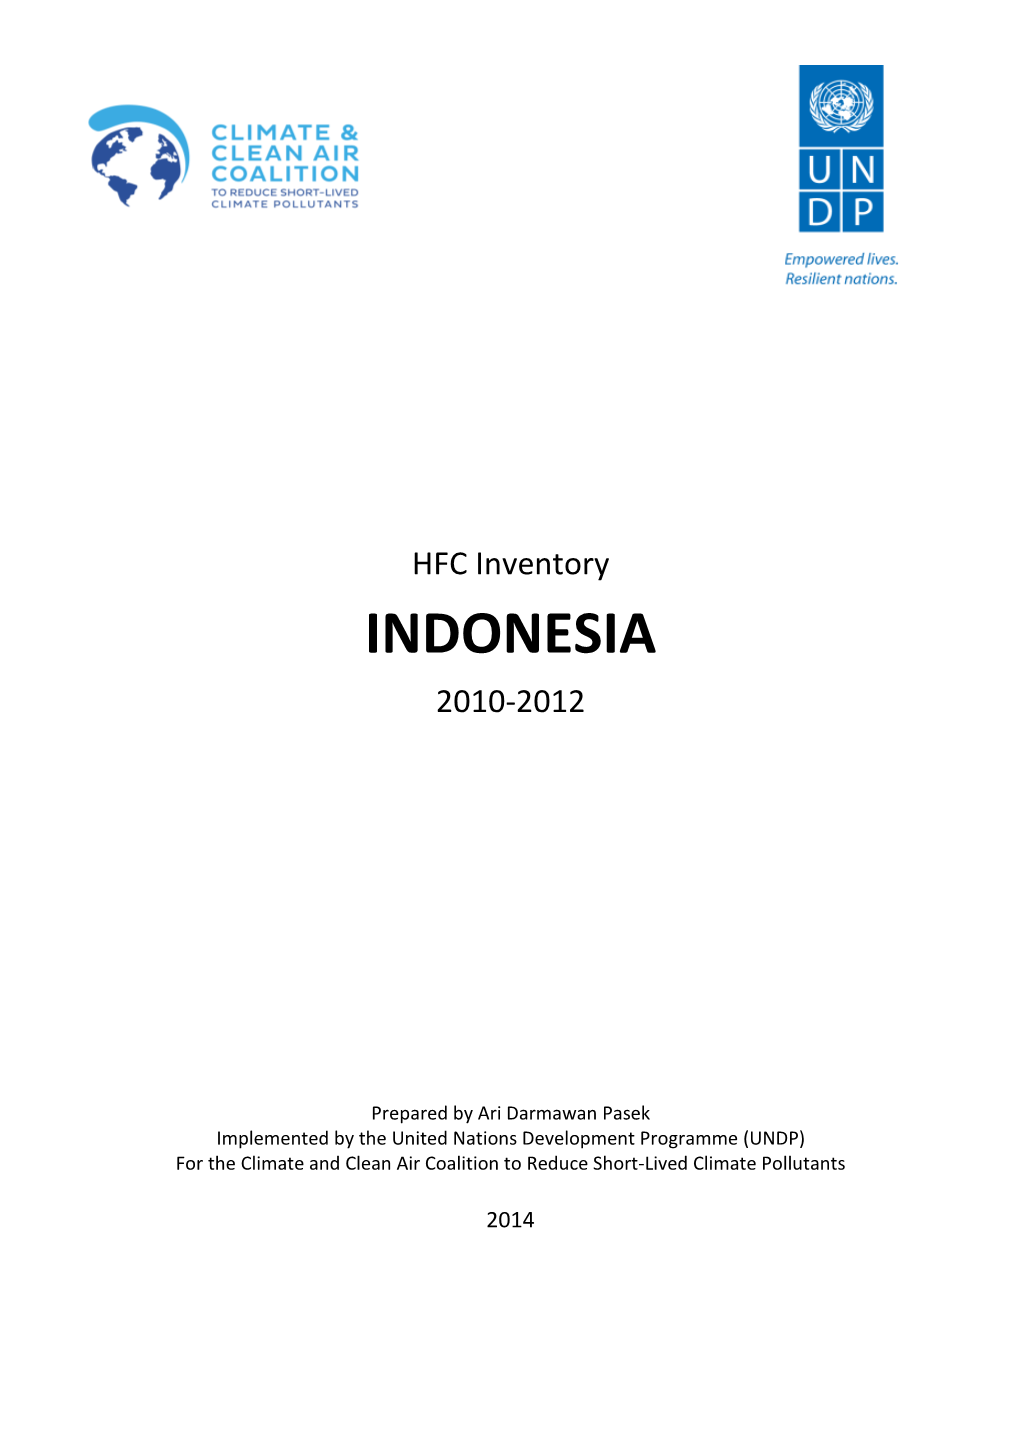 Indonesia 2010-2012